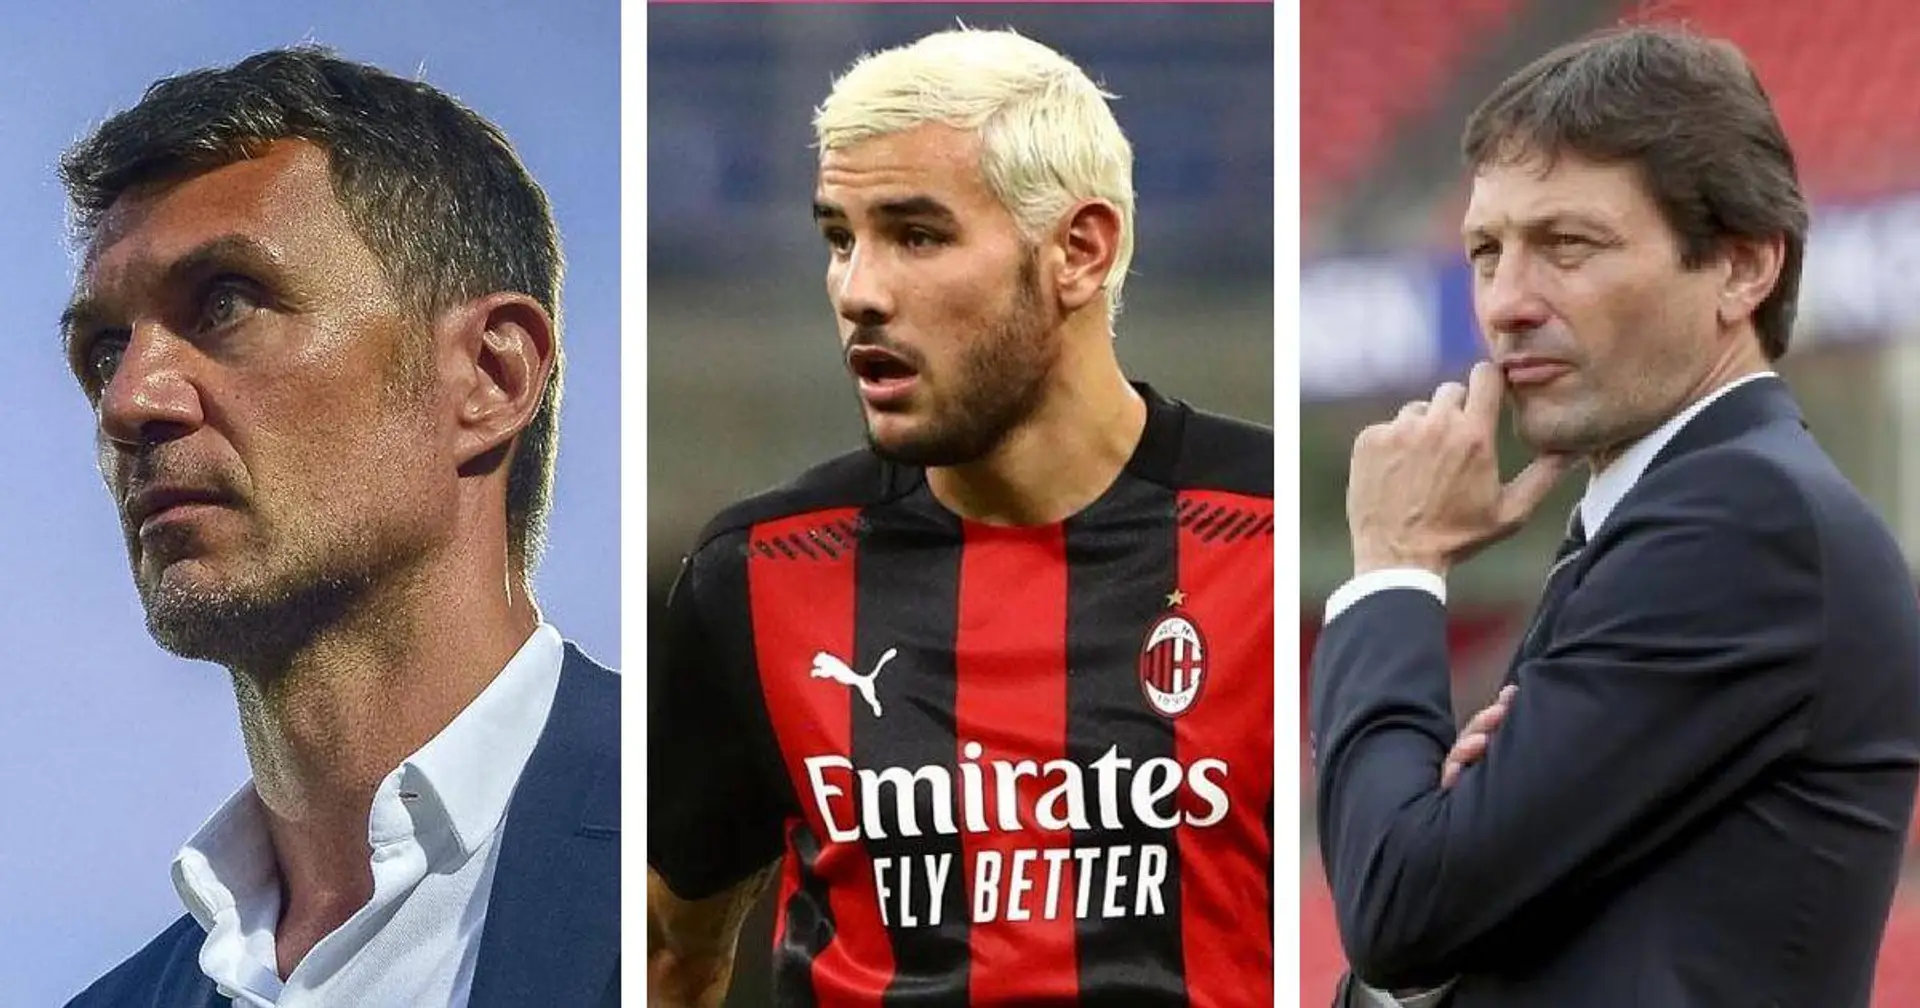 Les négociations pour la prolongation de Theo Hernandez sont en cours au Milan au milieu des rumeurs d'un intérêt fort du PSG (fiabilité: 5 étoiles)